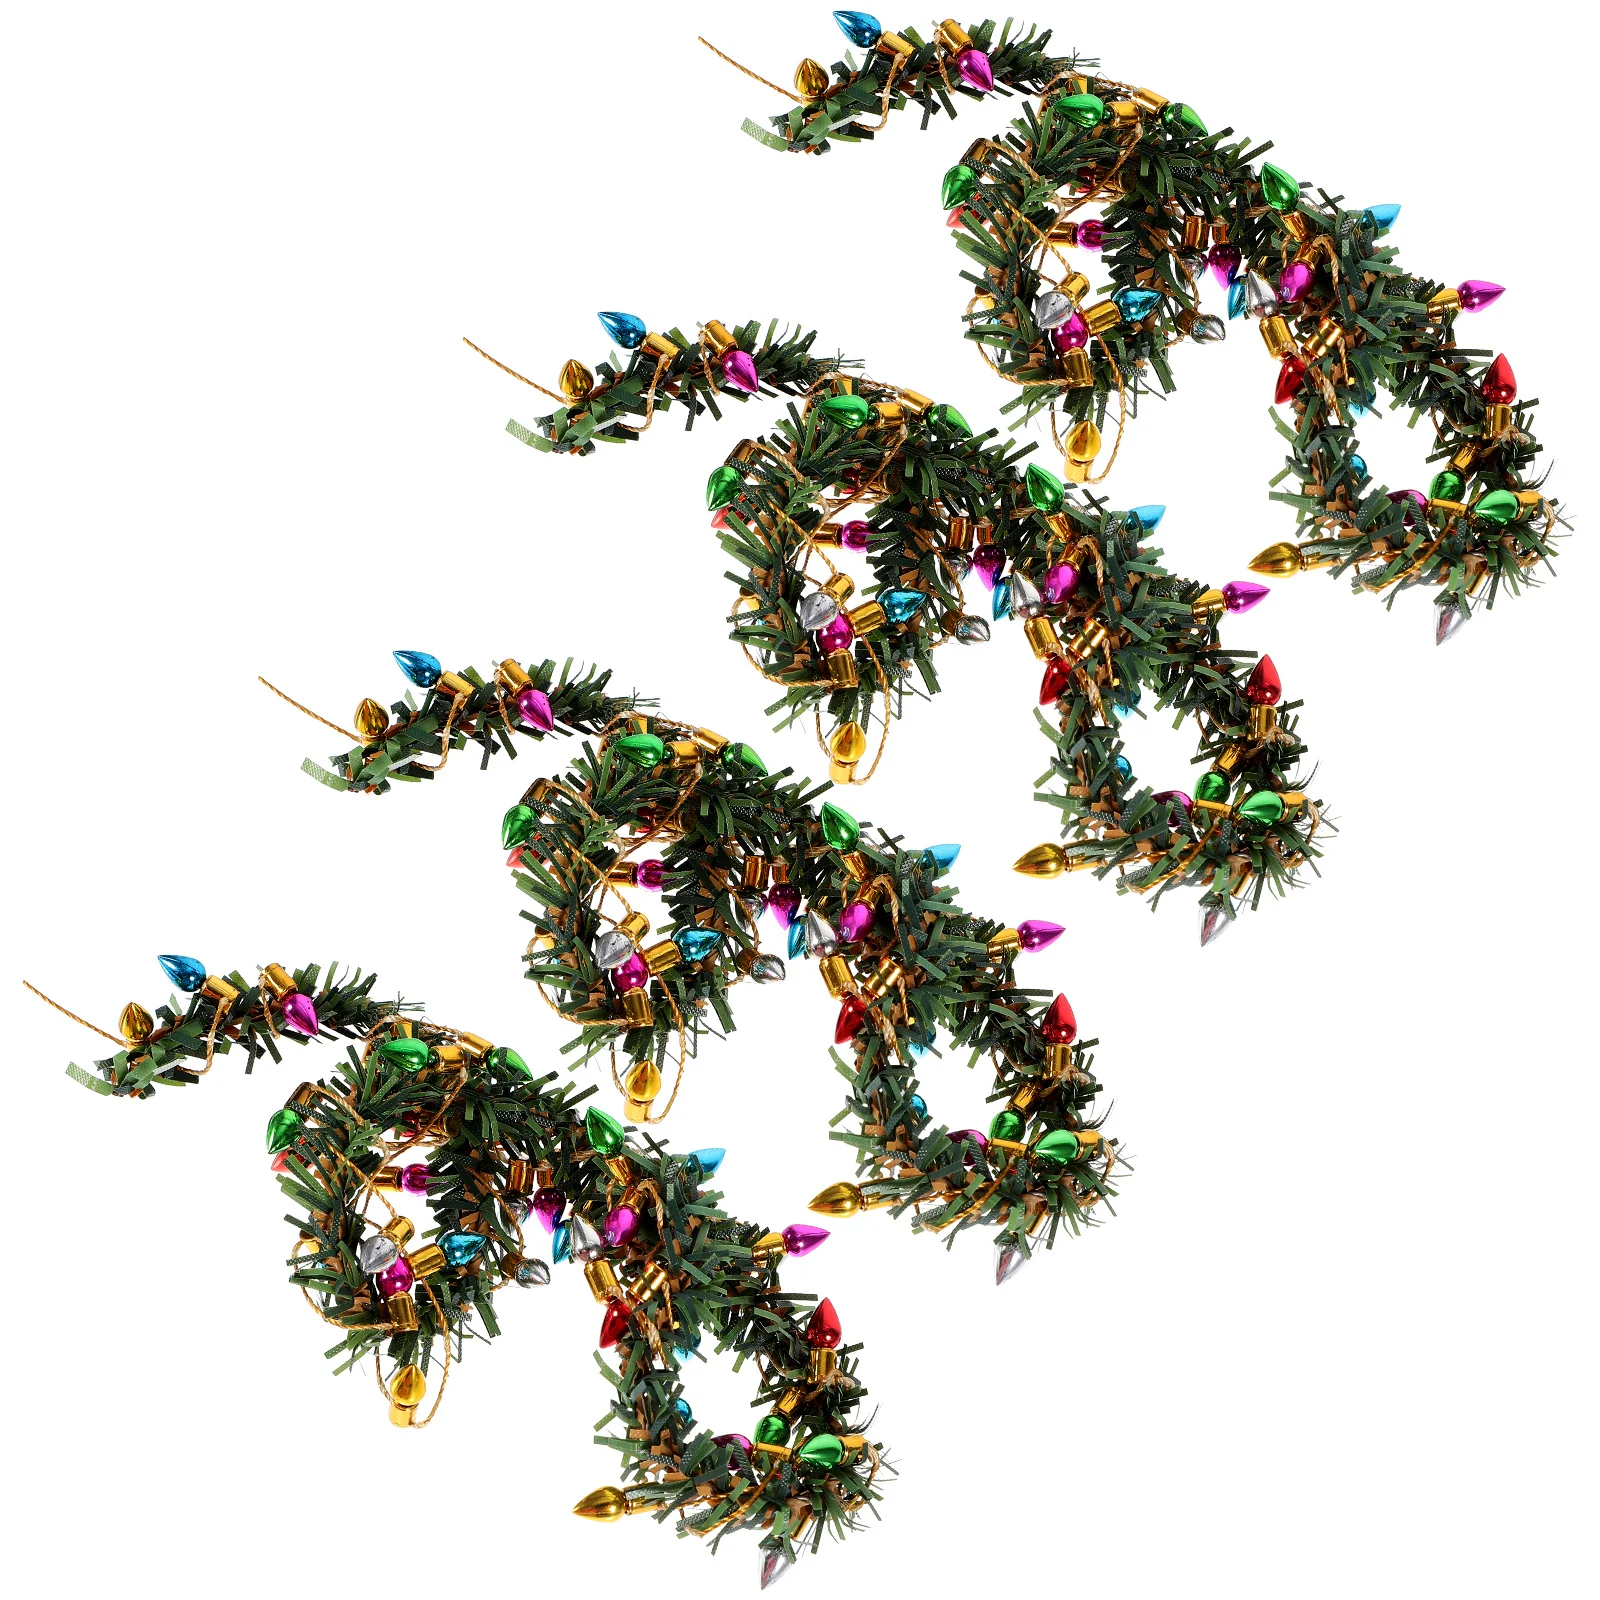 

Искусственная Рождественская гирлянда, подвески в виде венка, пластиковые мини-гирлянды, миниатюры, 4 шт.